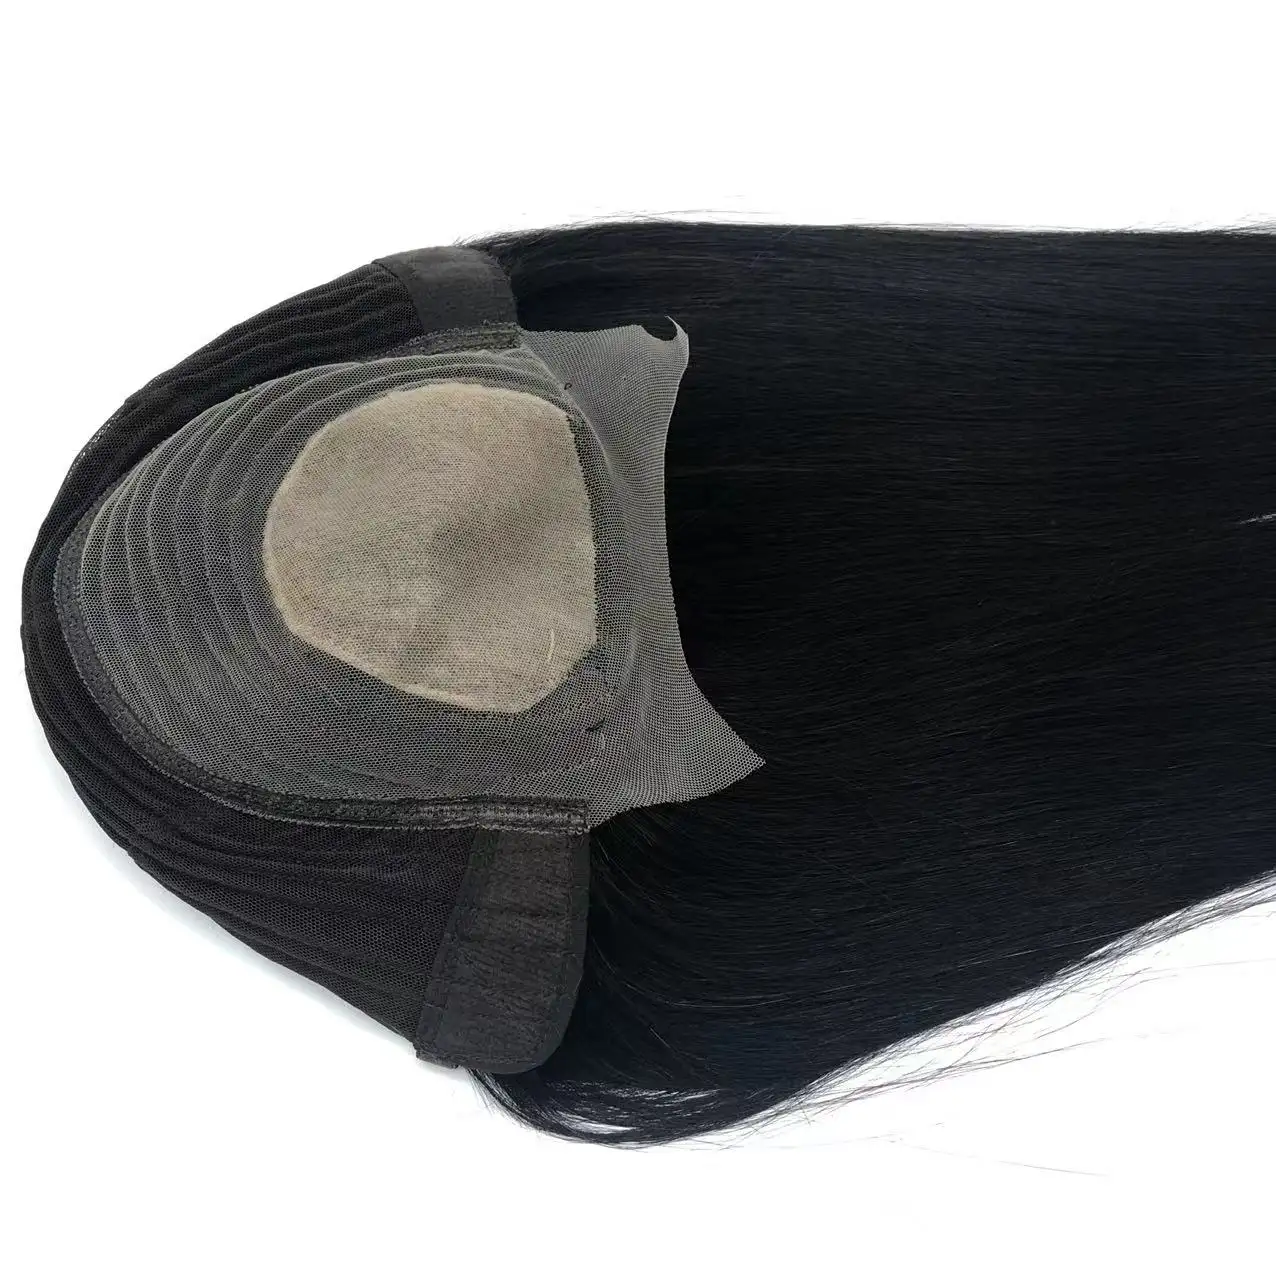 शेयर रेशम विग 7x10 cm रेशम आधार प्राकृतिक शीर्ष सिर के मध्य टौपी मशीन बनाया Wigs मानव बाल